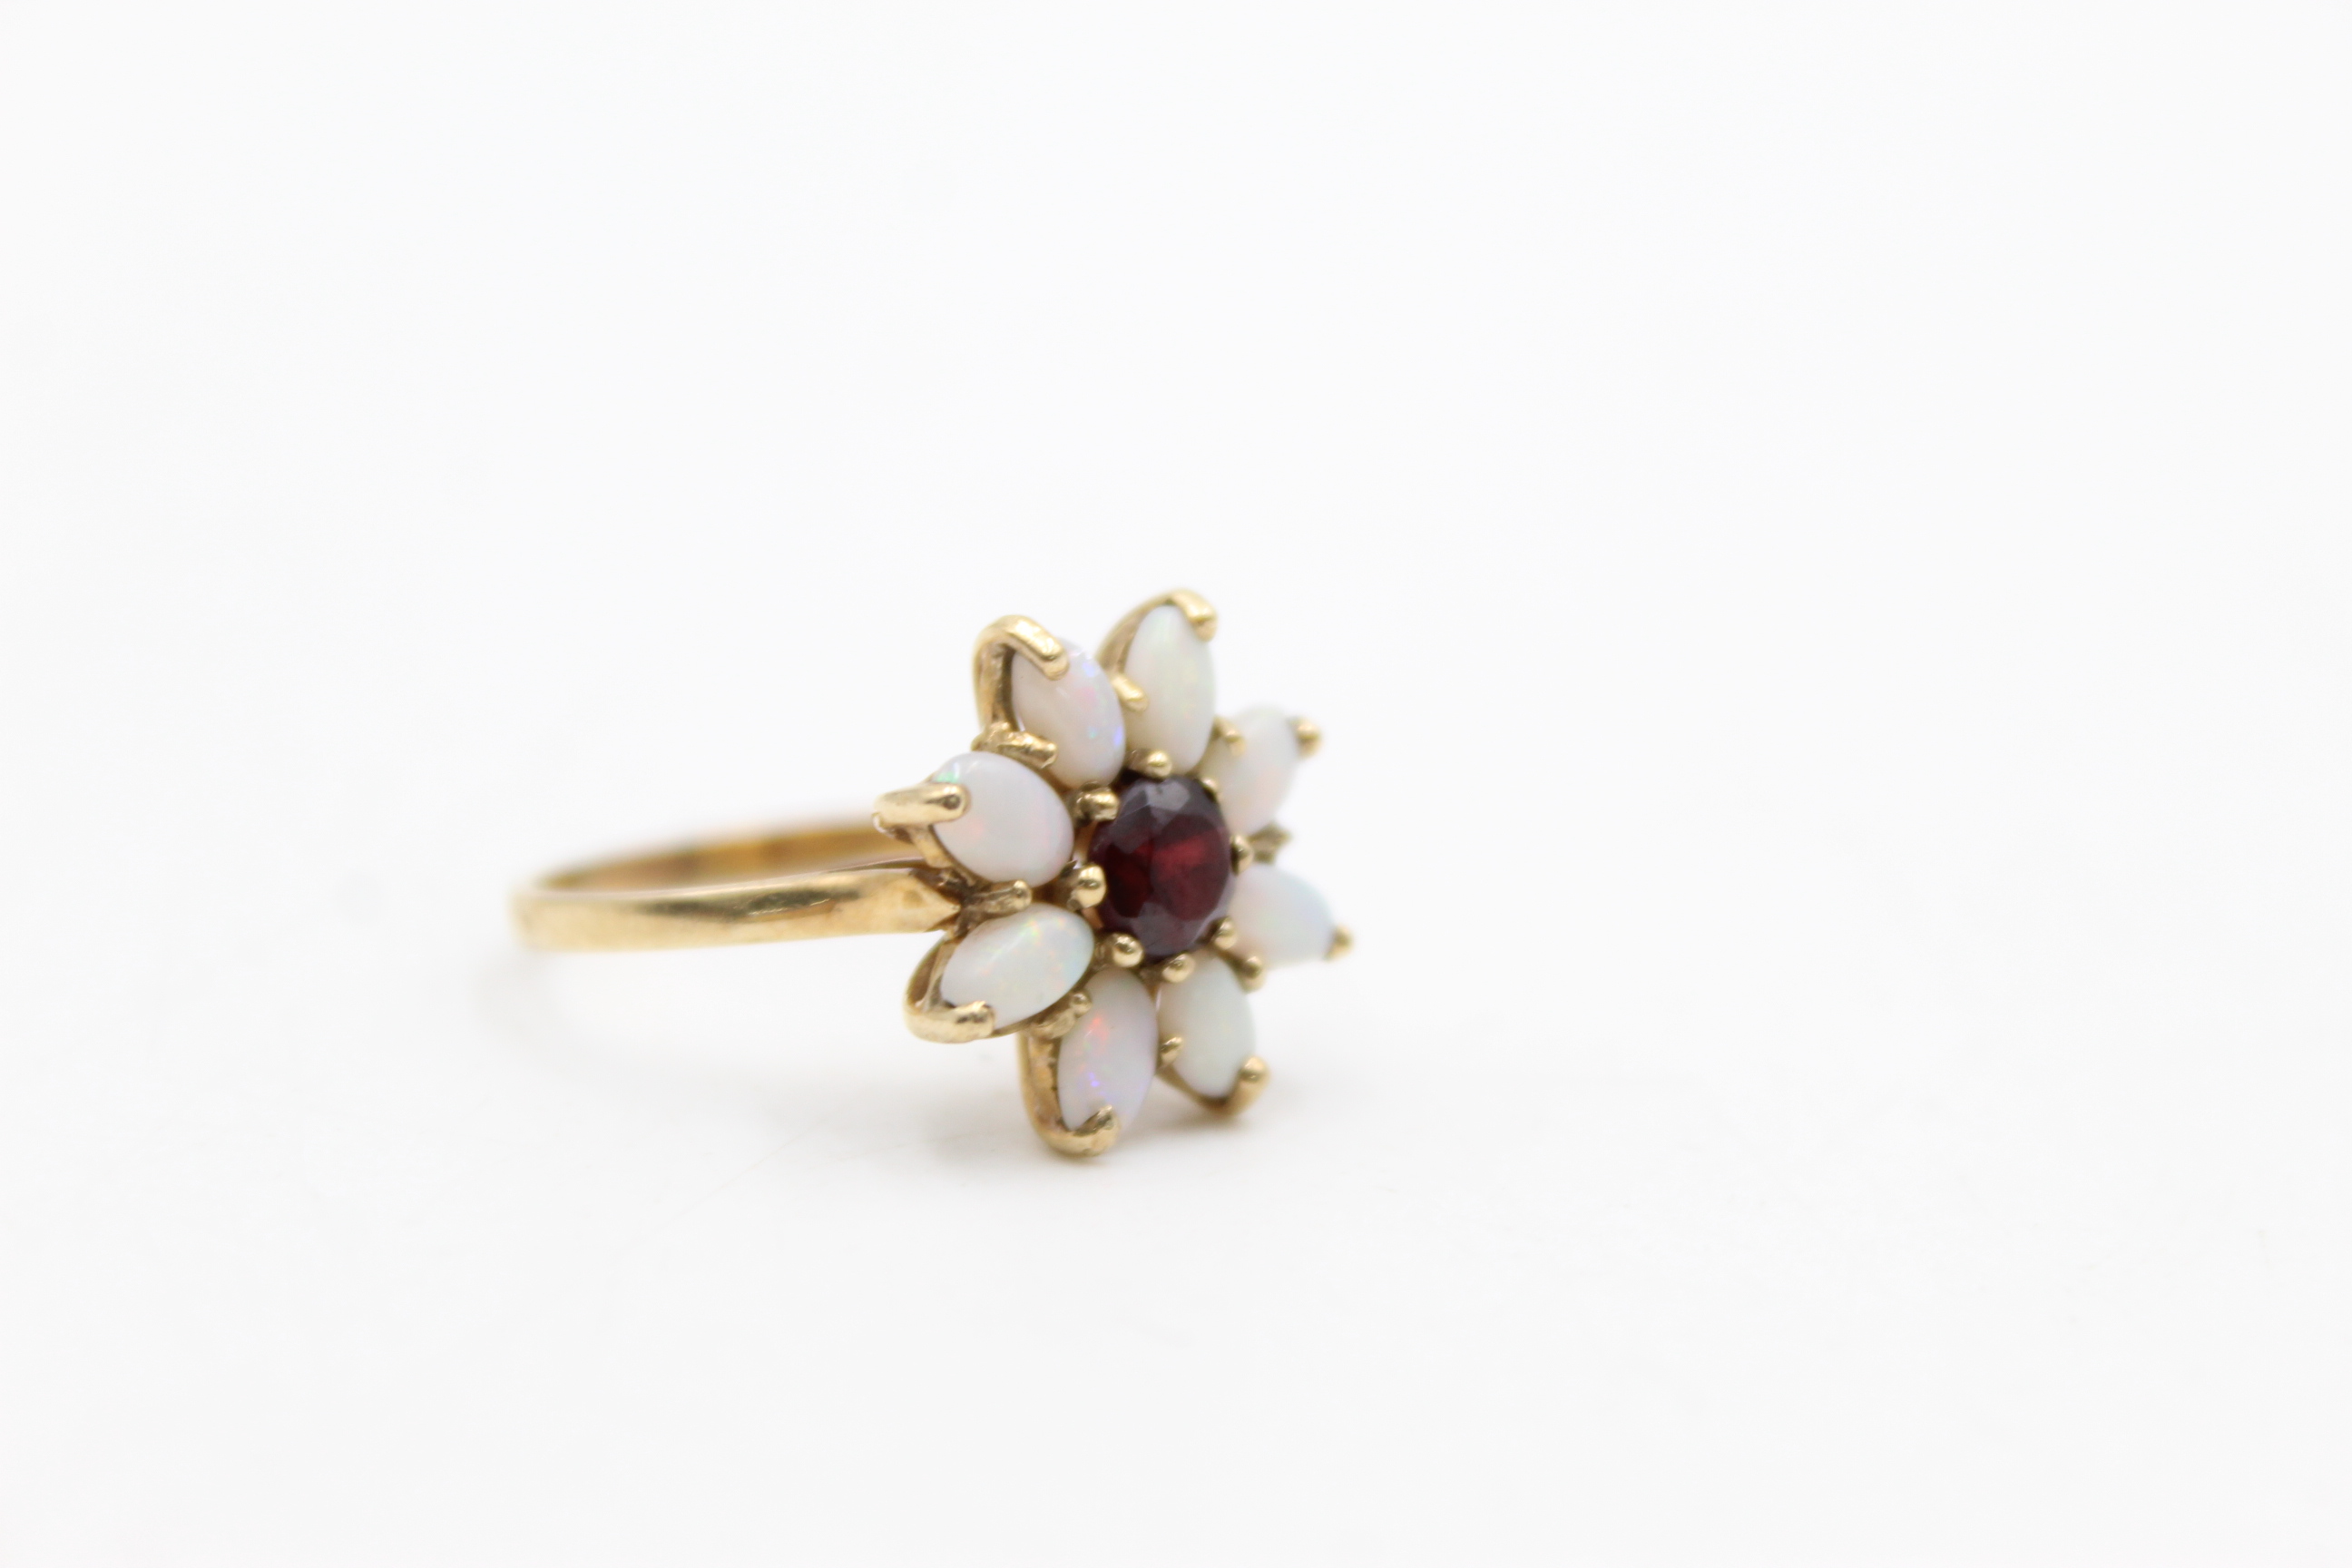 9ct gold opal & garnet floral dress ring (3.1g) - Image 2 of 8